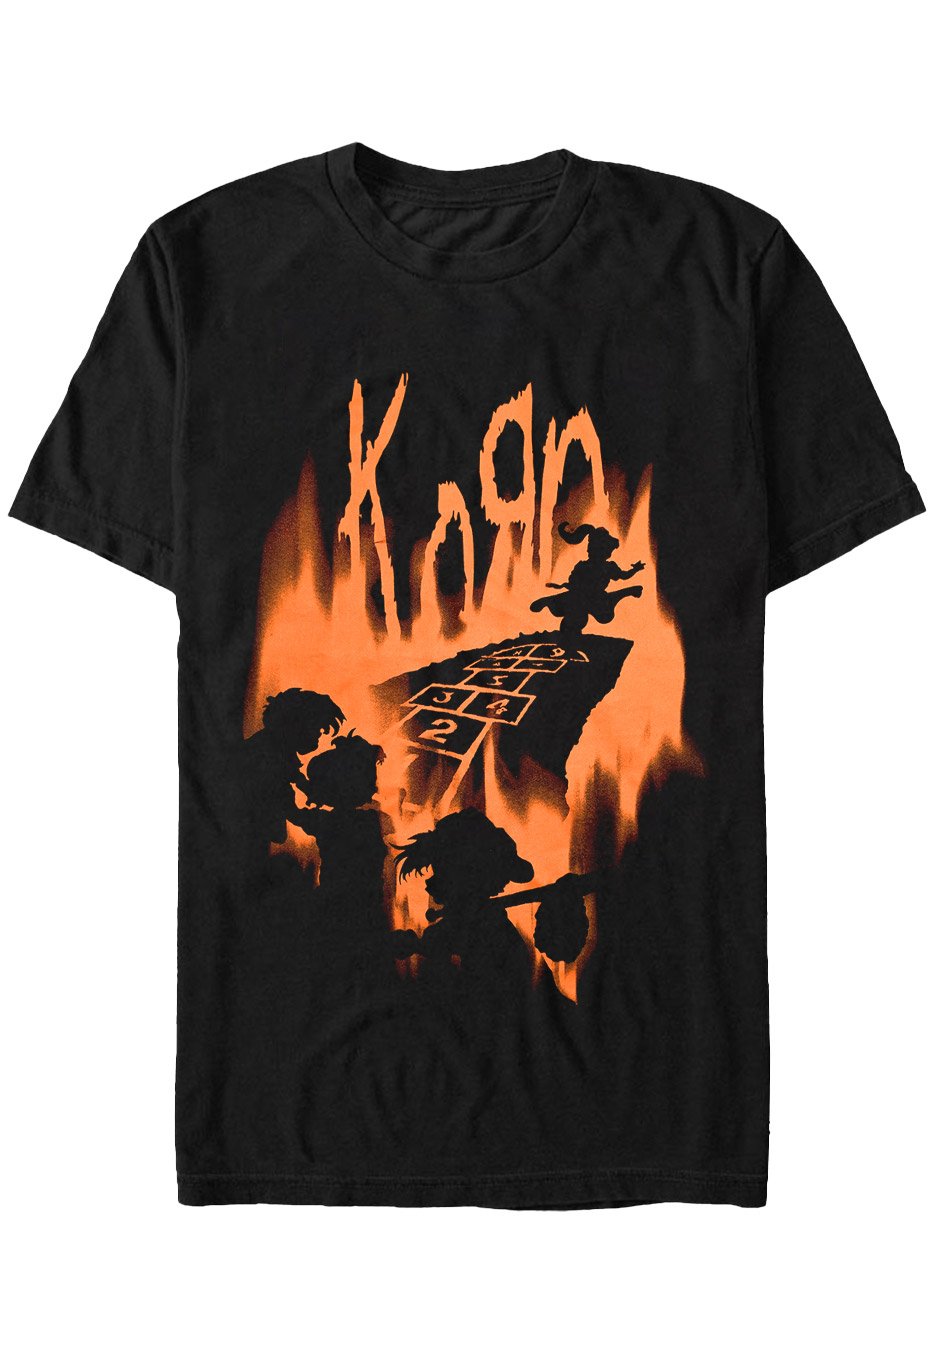 Korn - Hopscotch Flame - T-Shirt